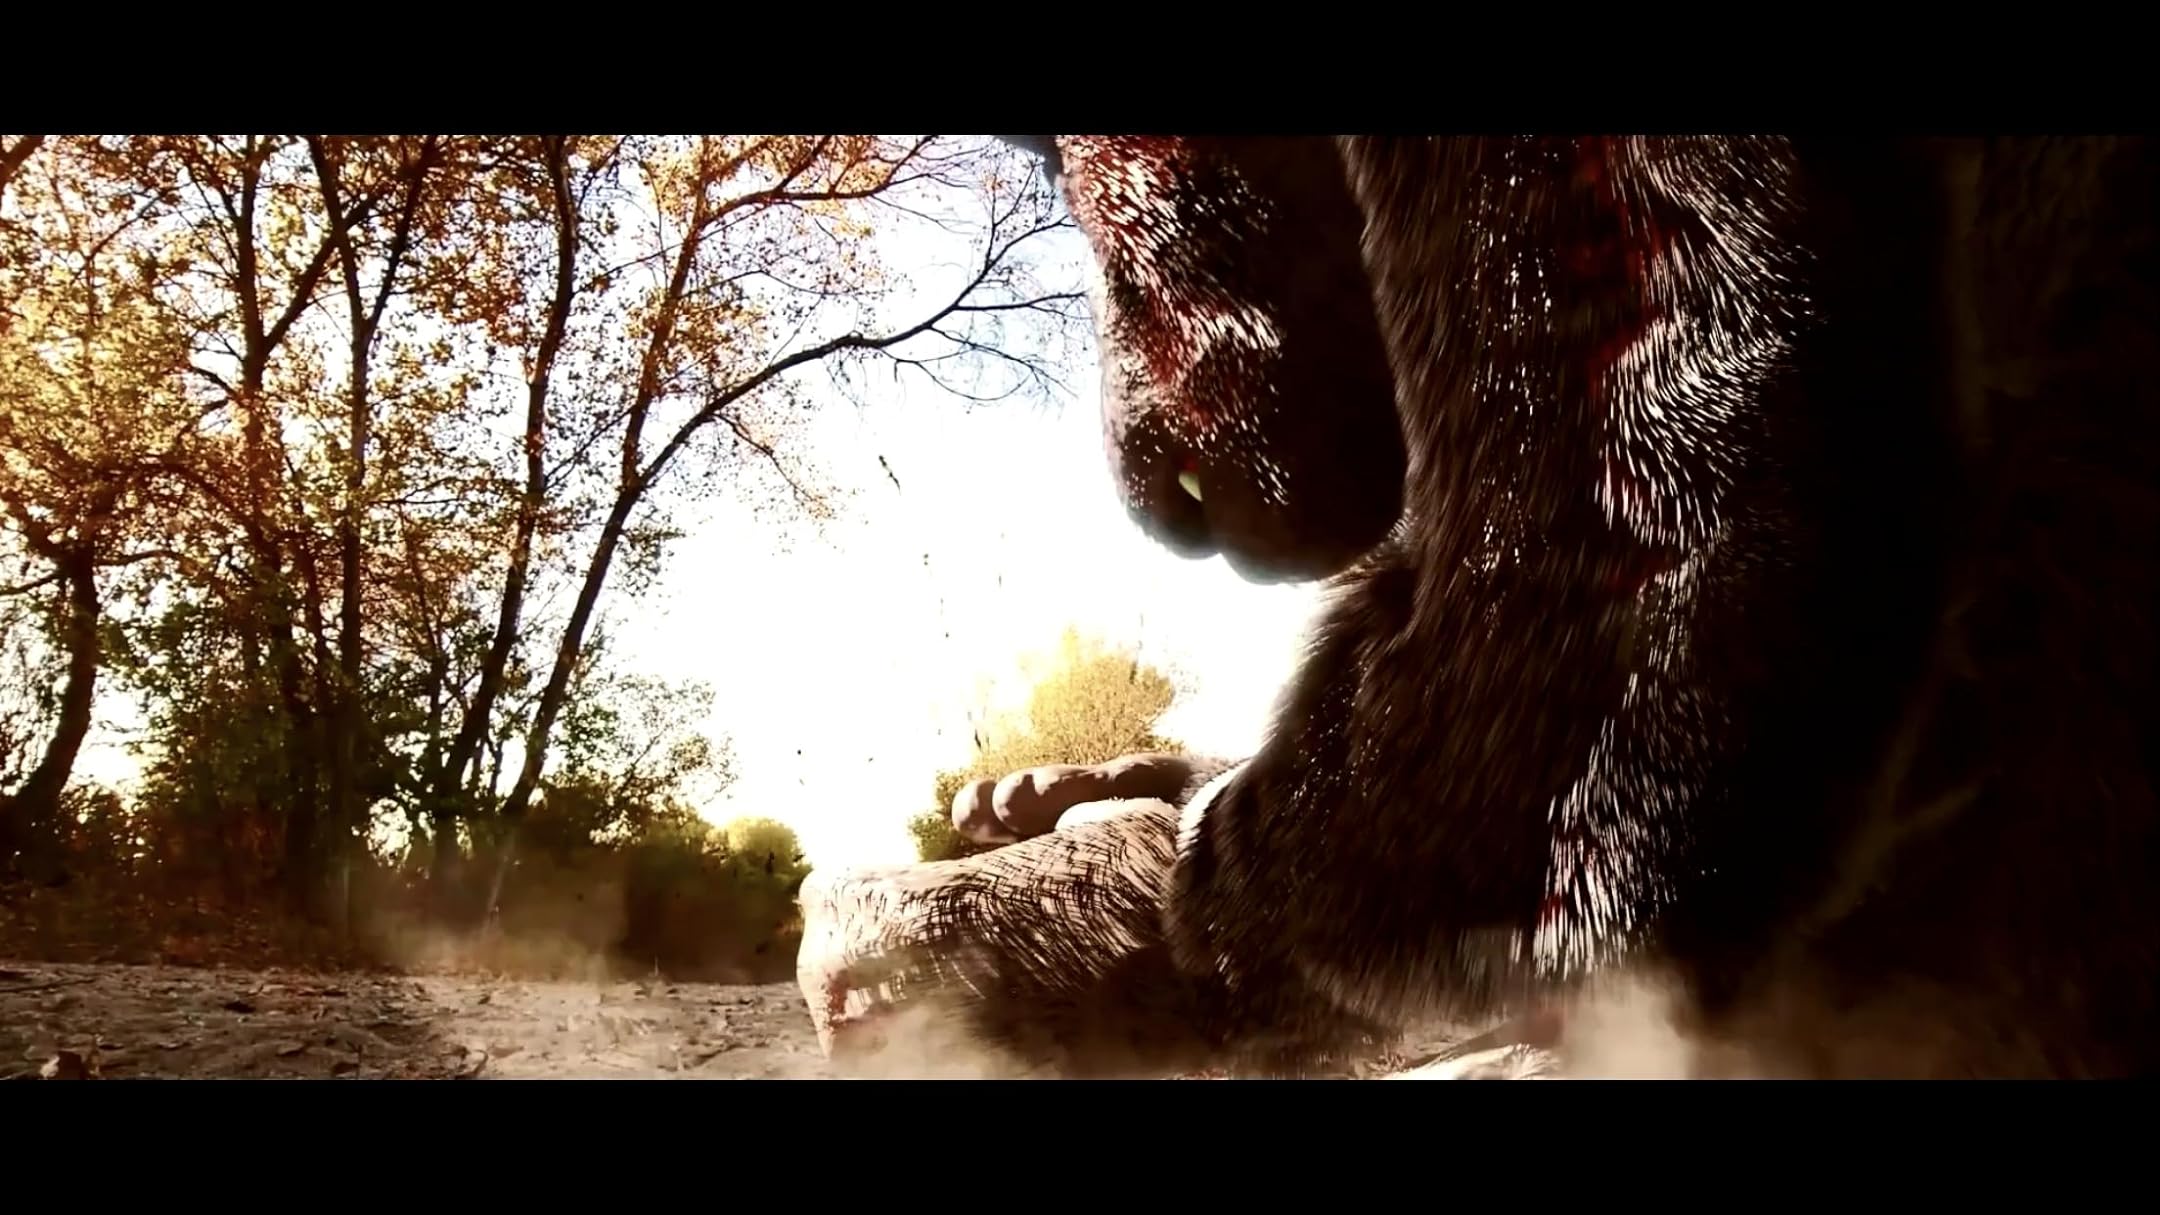 فیلم Mega Ape 2023 | مگا میمون